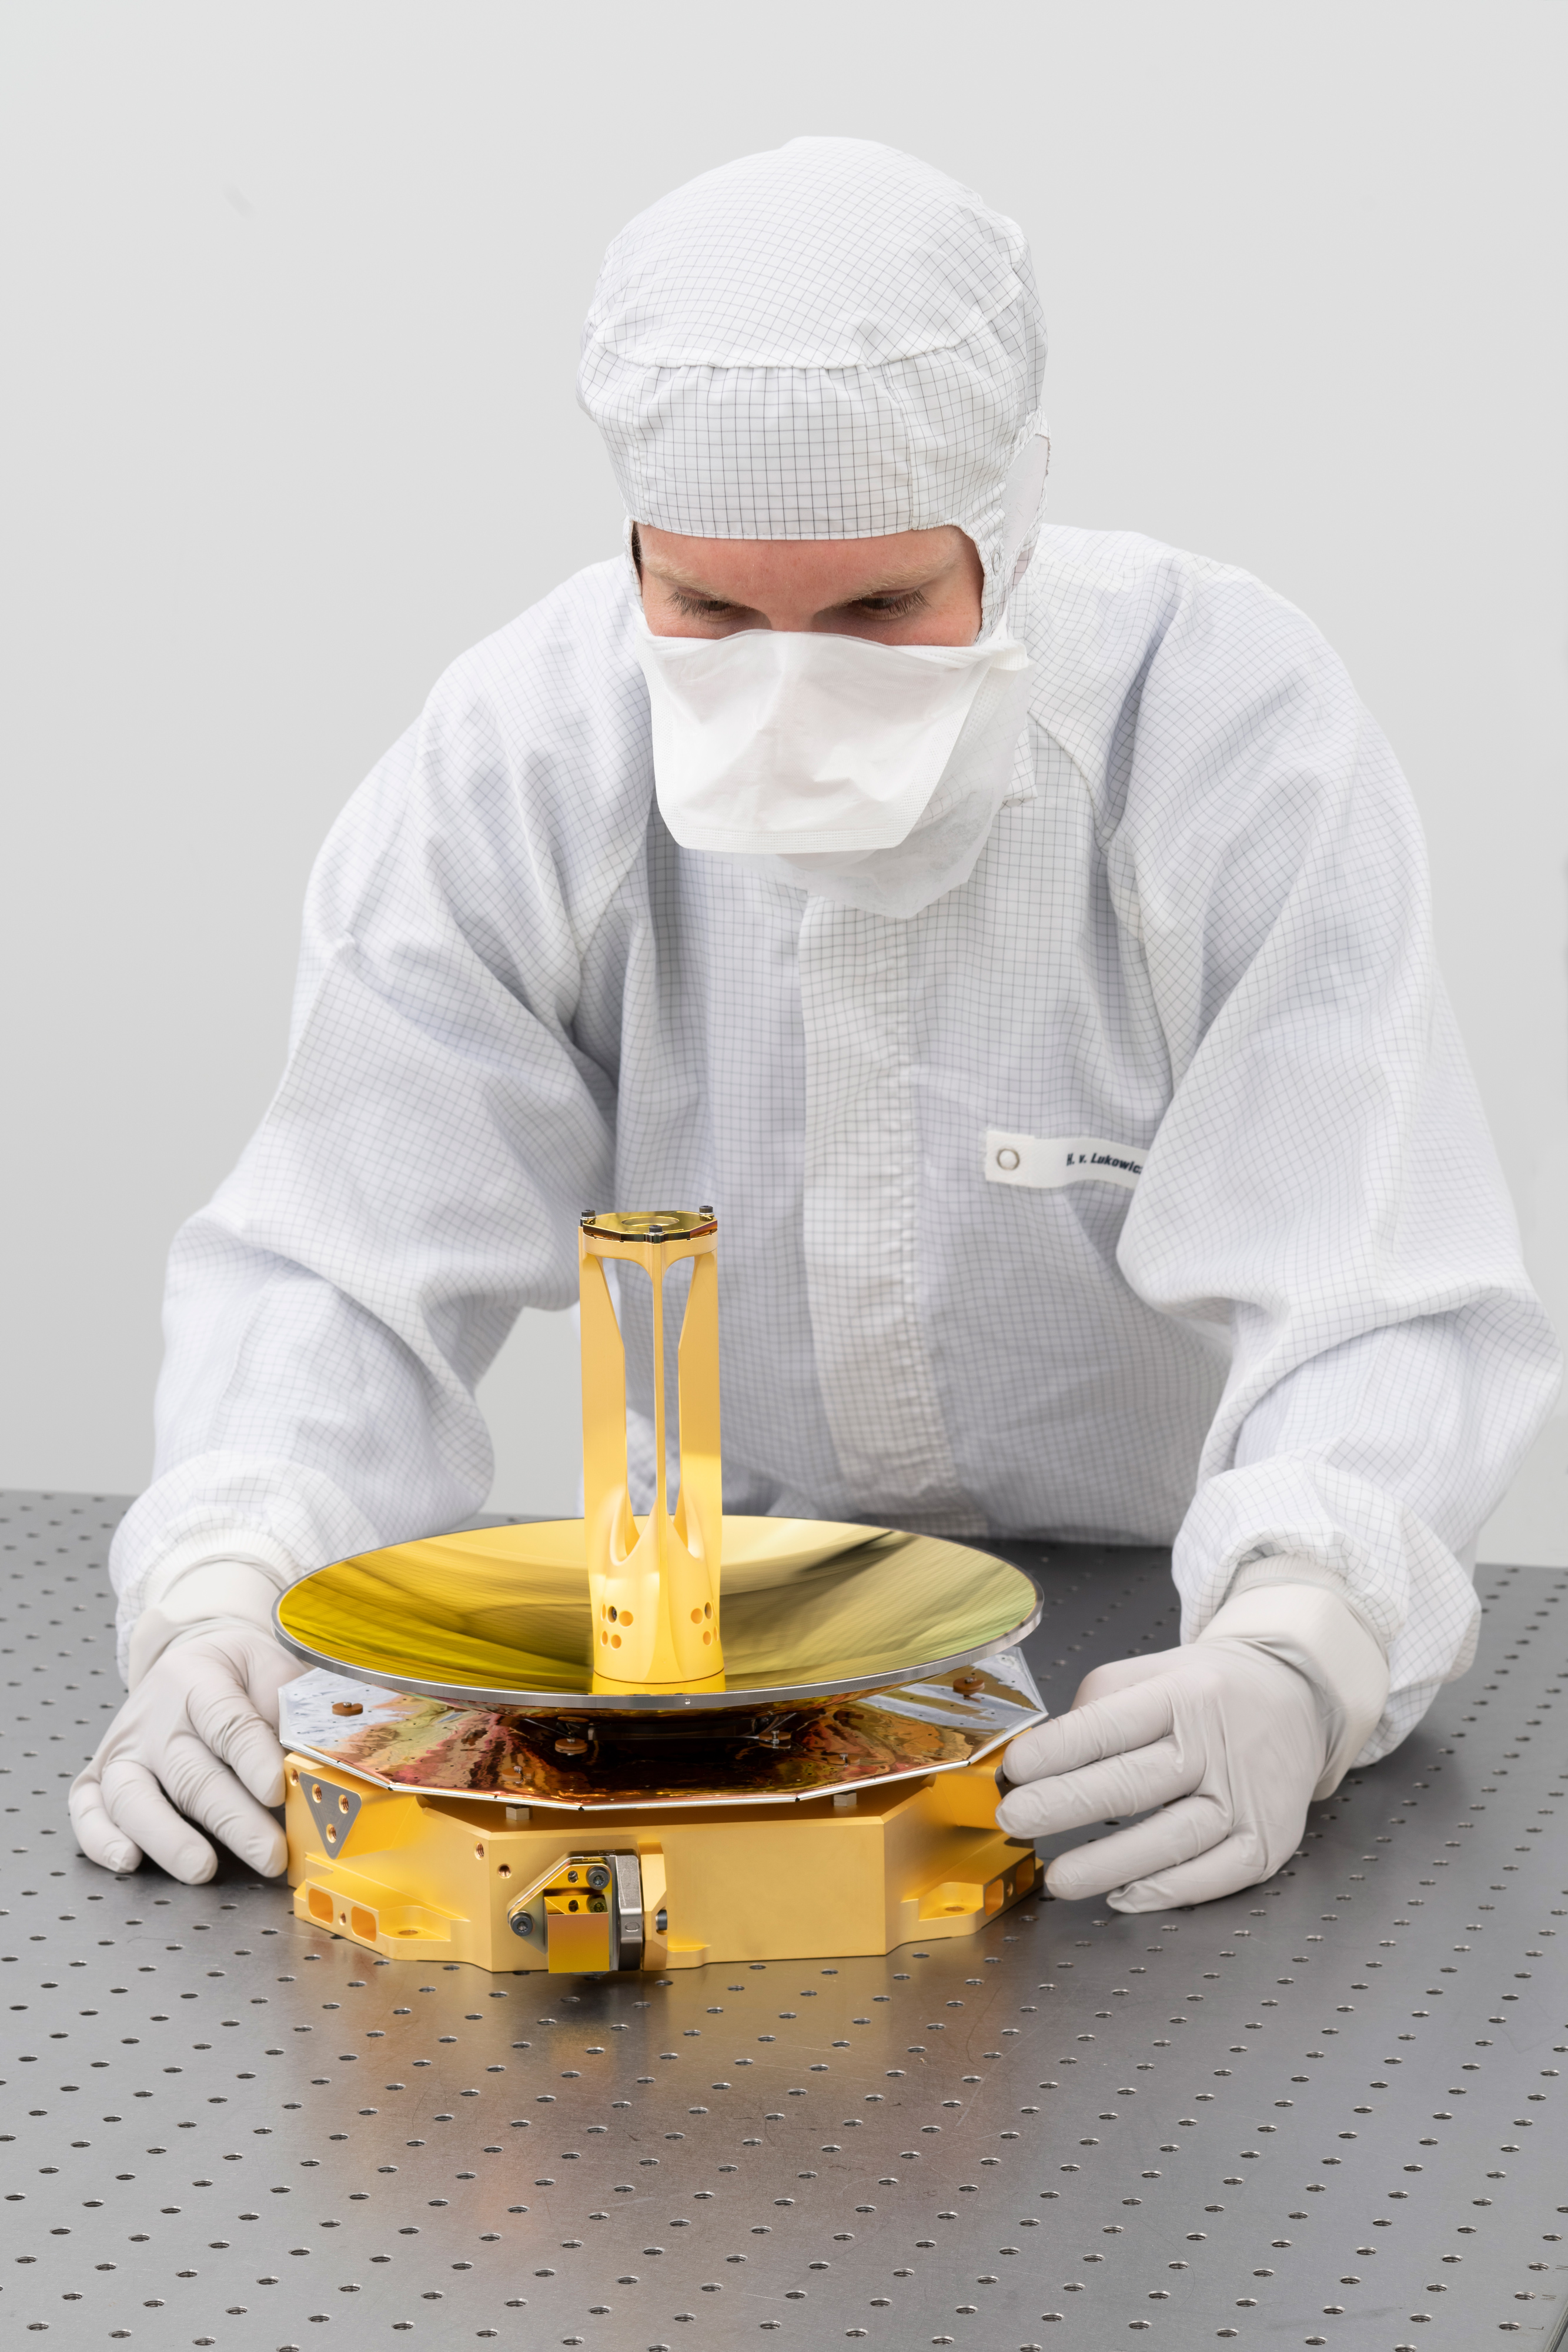 Das Spiegelteleskop für Laser Altimeter GALA wurde entwickelt in Jena vom Fraunhofer IOF.